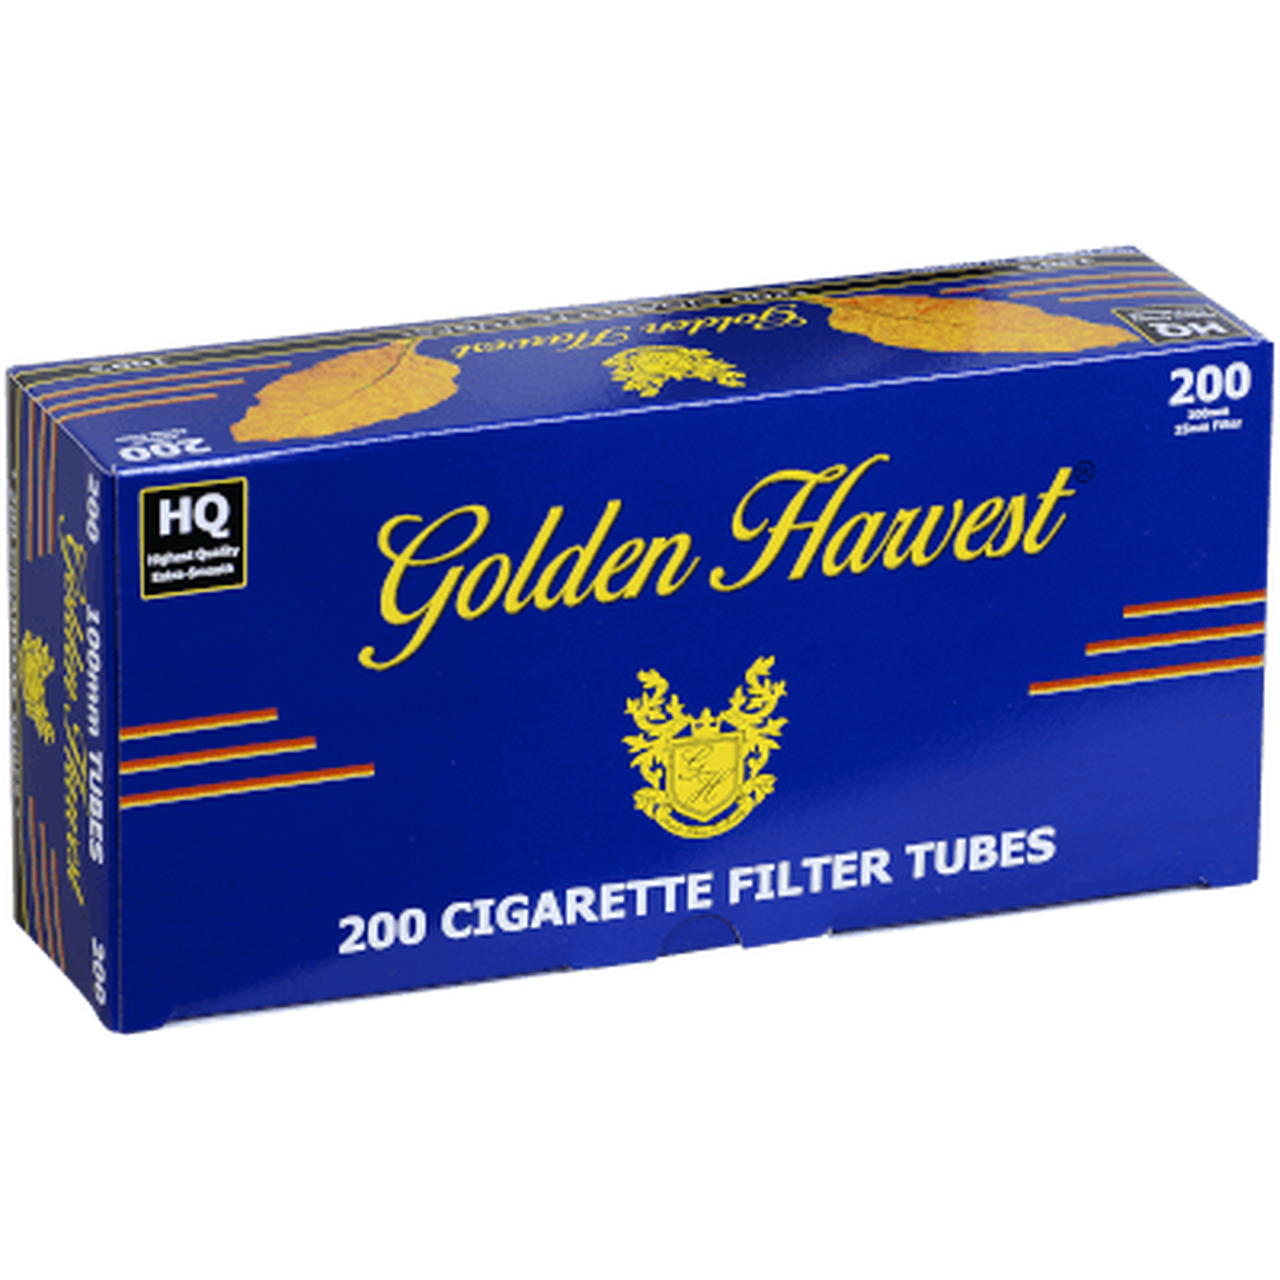 Golden Harvest BLUE 100mm Cigarette Tubes 200 Count Per Box (50-Boxes)